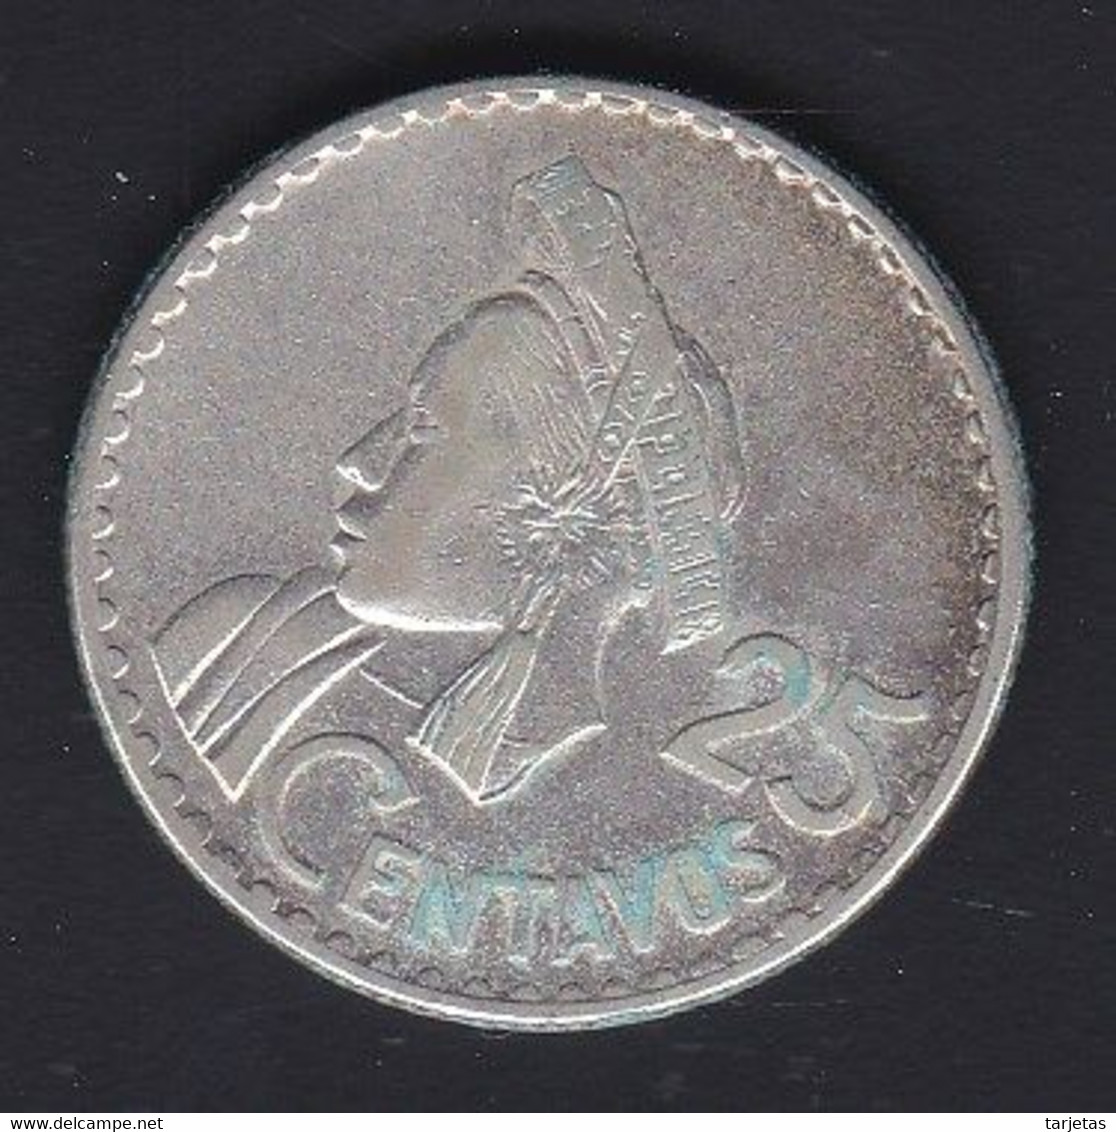 MONEDA DE PLATA DE GUATEMALA DE 25 CENTAVOS DEL AÑO 1960  (COIN) SILVER,ARGENT. - Guatemala